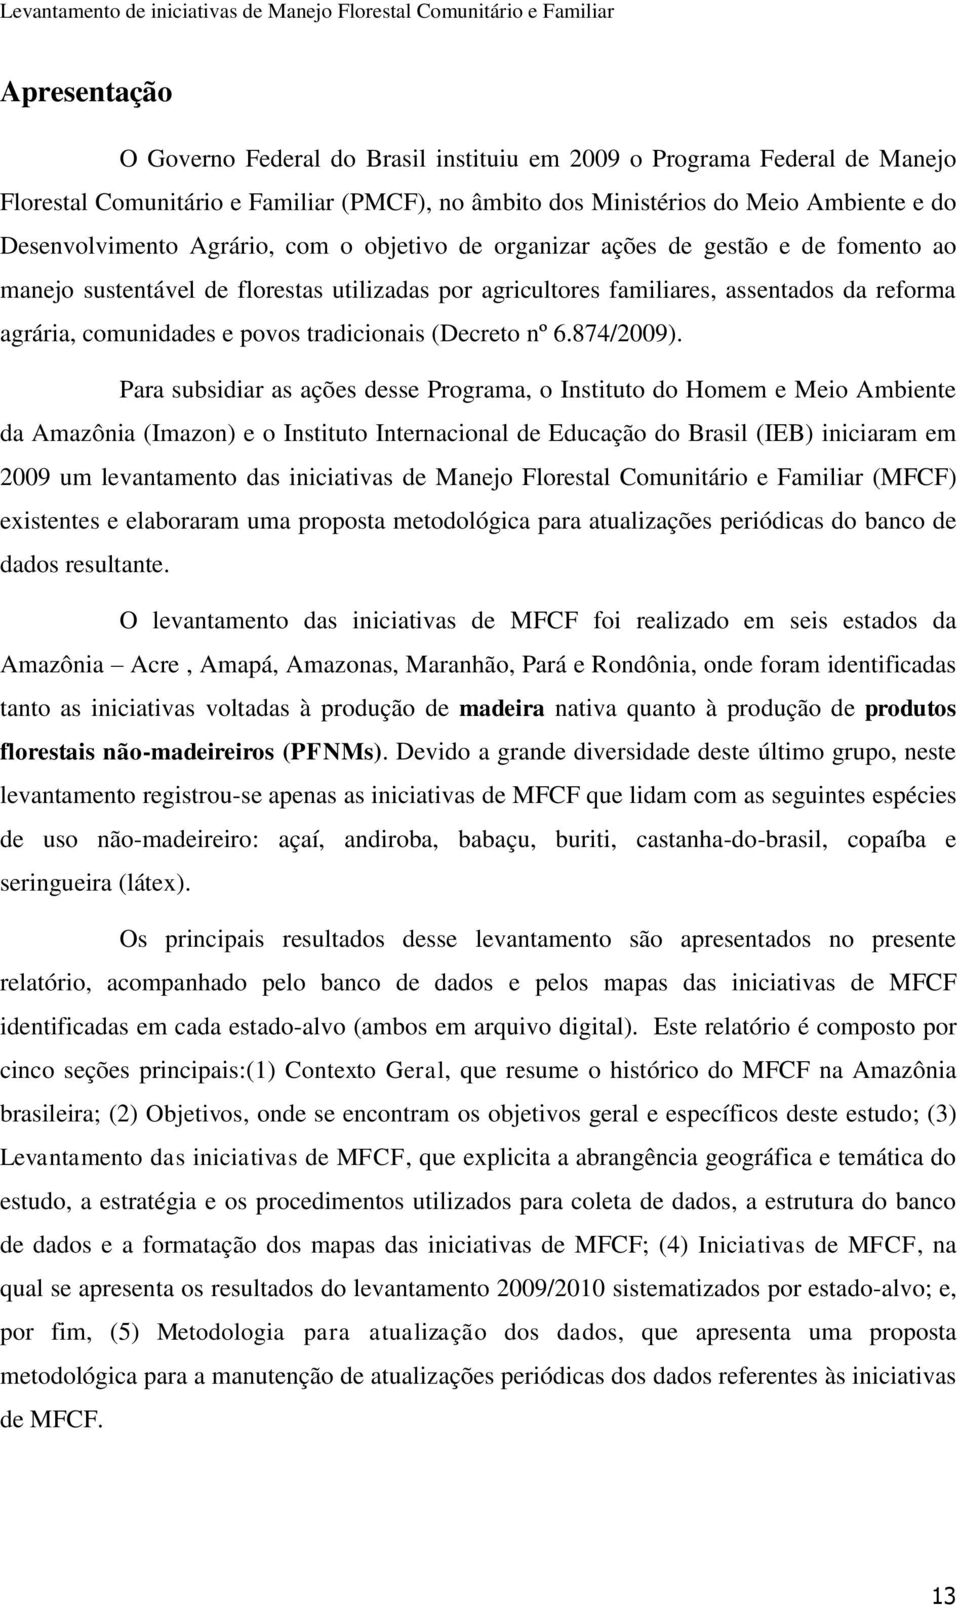 tradicionais (Decreto nº 6.874/2009).